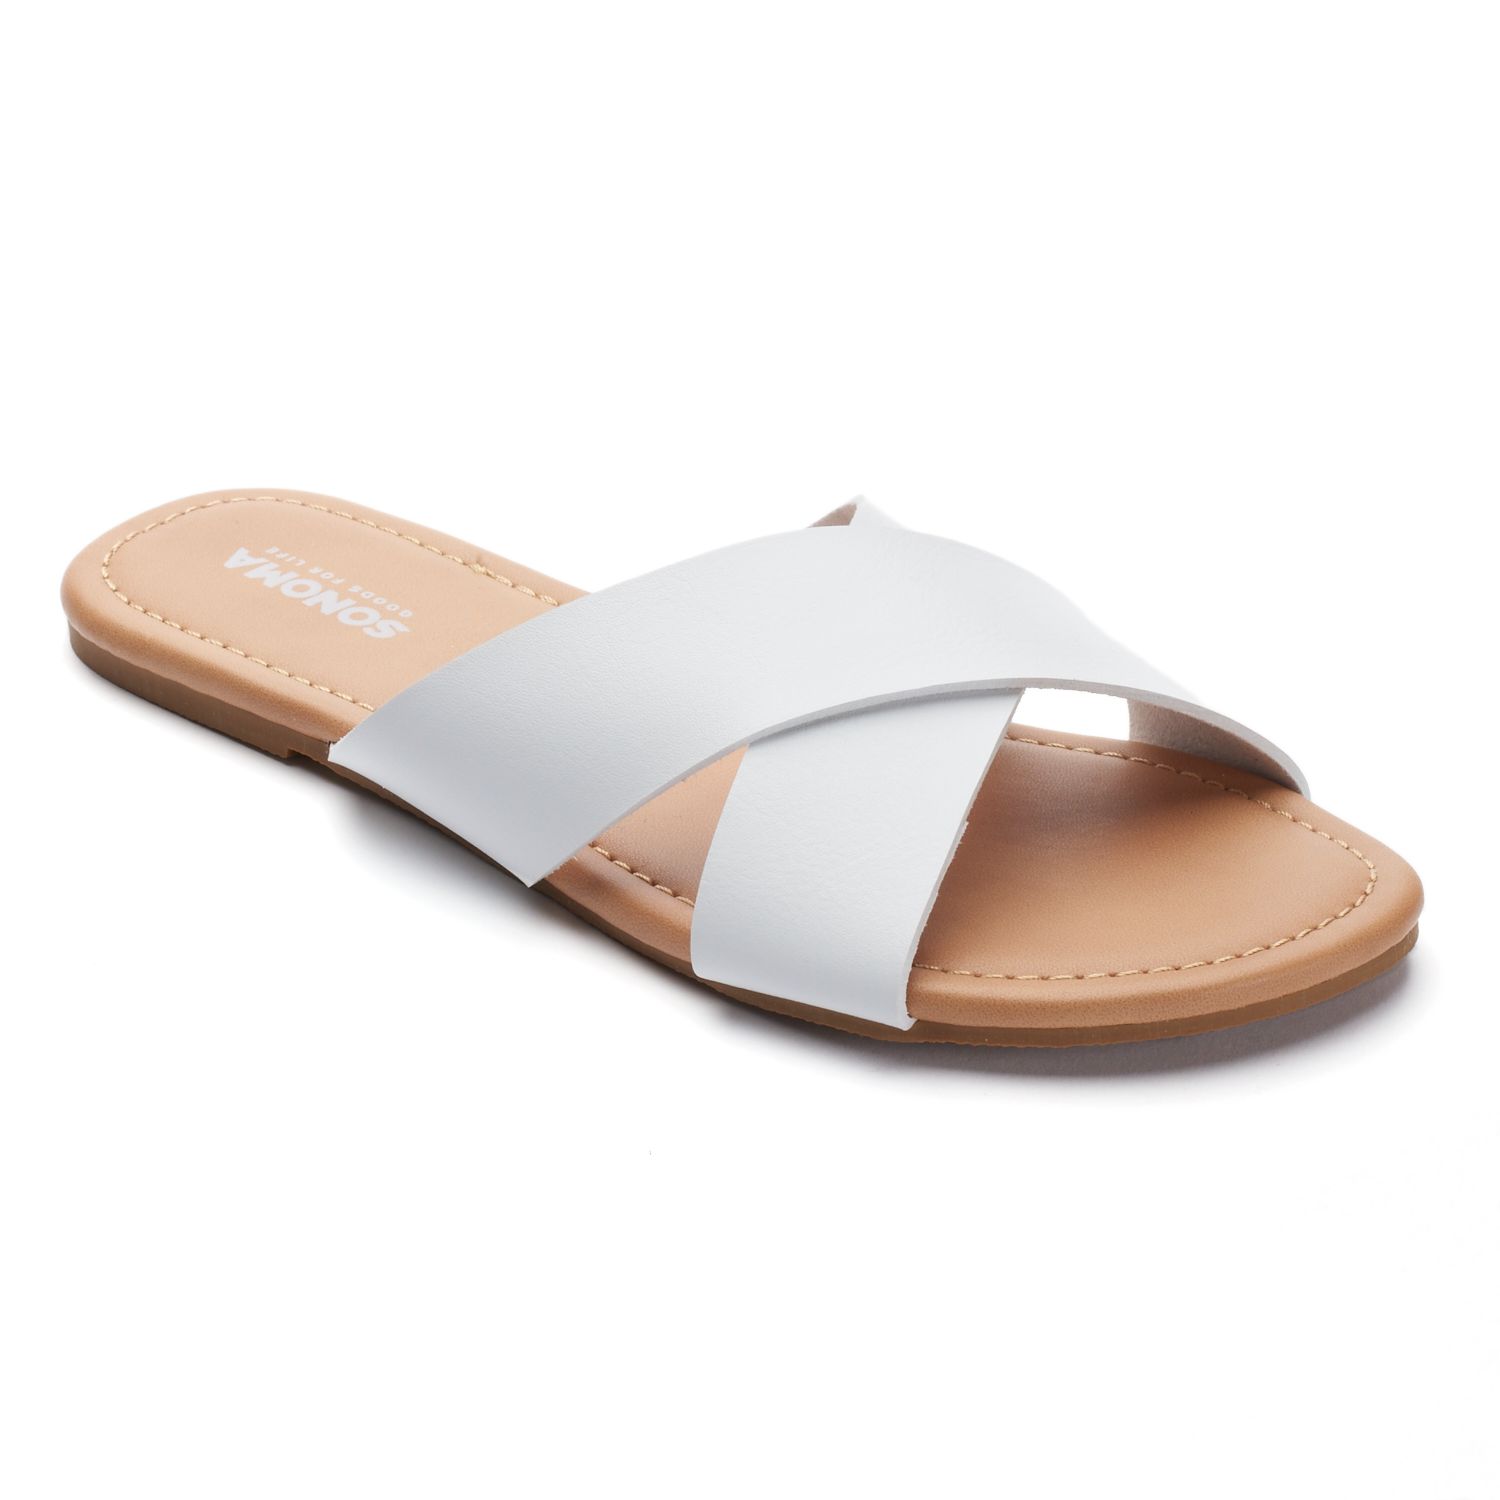 criss cross slide sandals